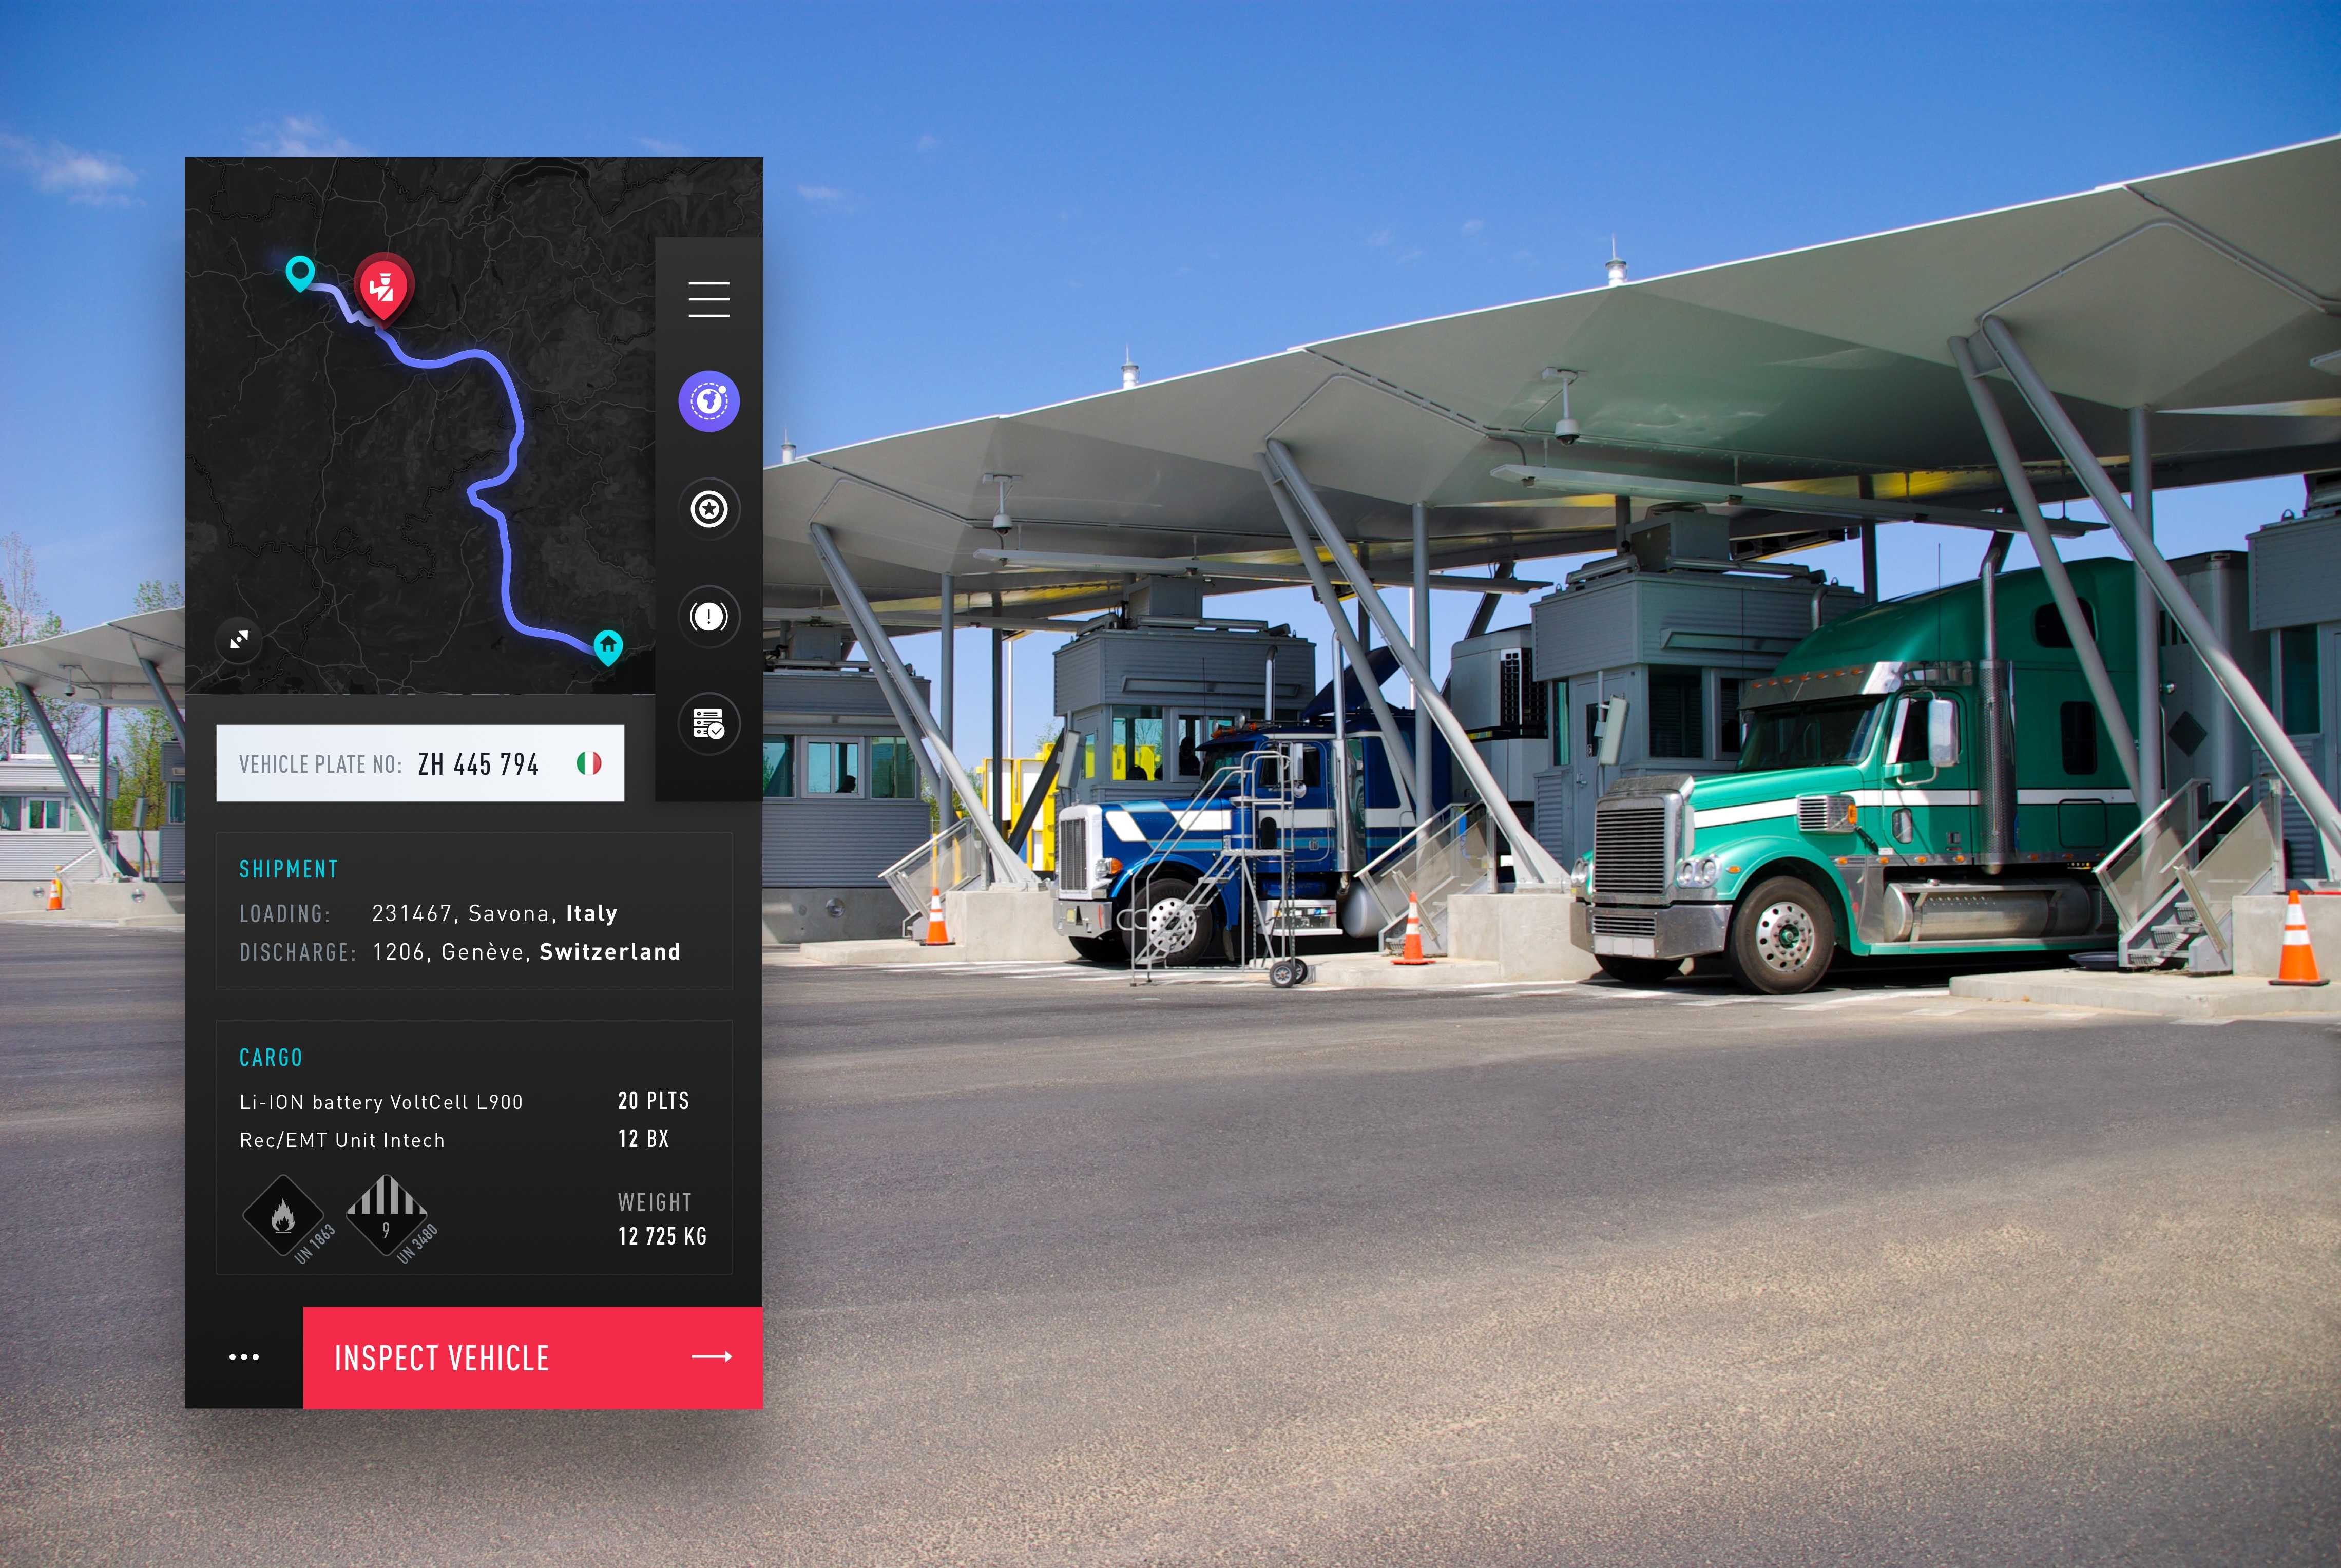 Diseño de la interfaz de usuario de una aplicación de inteligencia en un paso fronterizo con camiones esperando en segundo plano